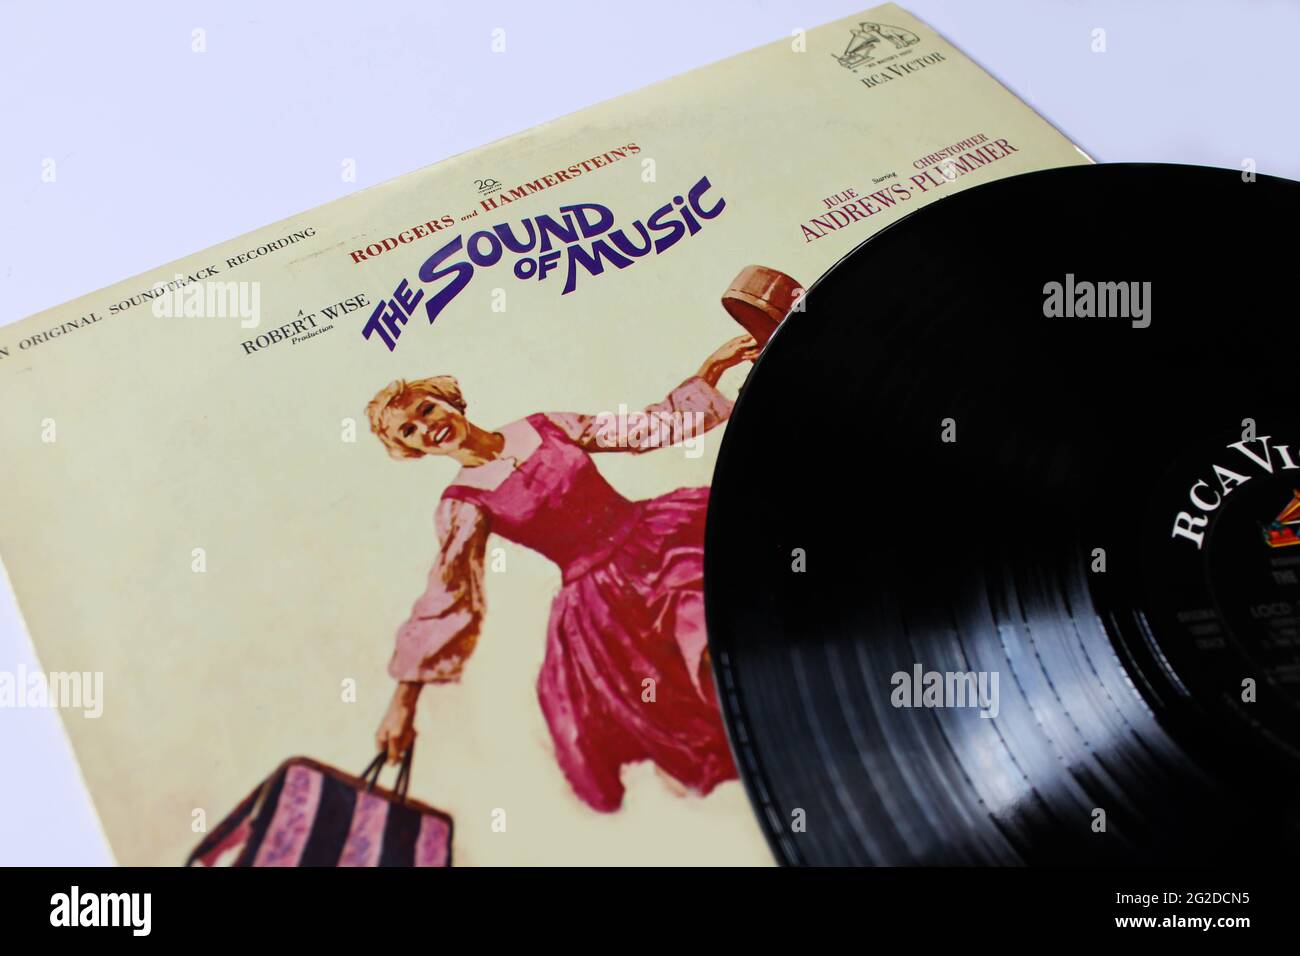 Der Soundtrack des Films The Sound of Music wurde 1965 von RCA Victor veröffentlicht. Album auf Vinyl. Albumcover Stockfoto